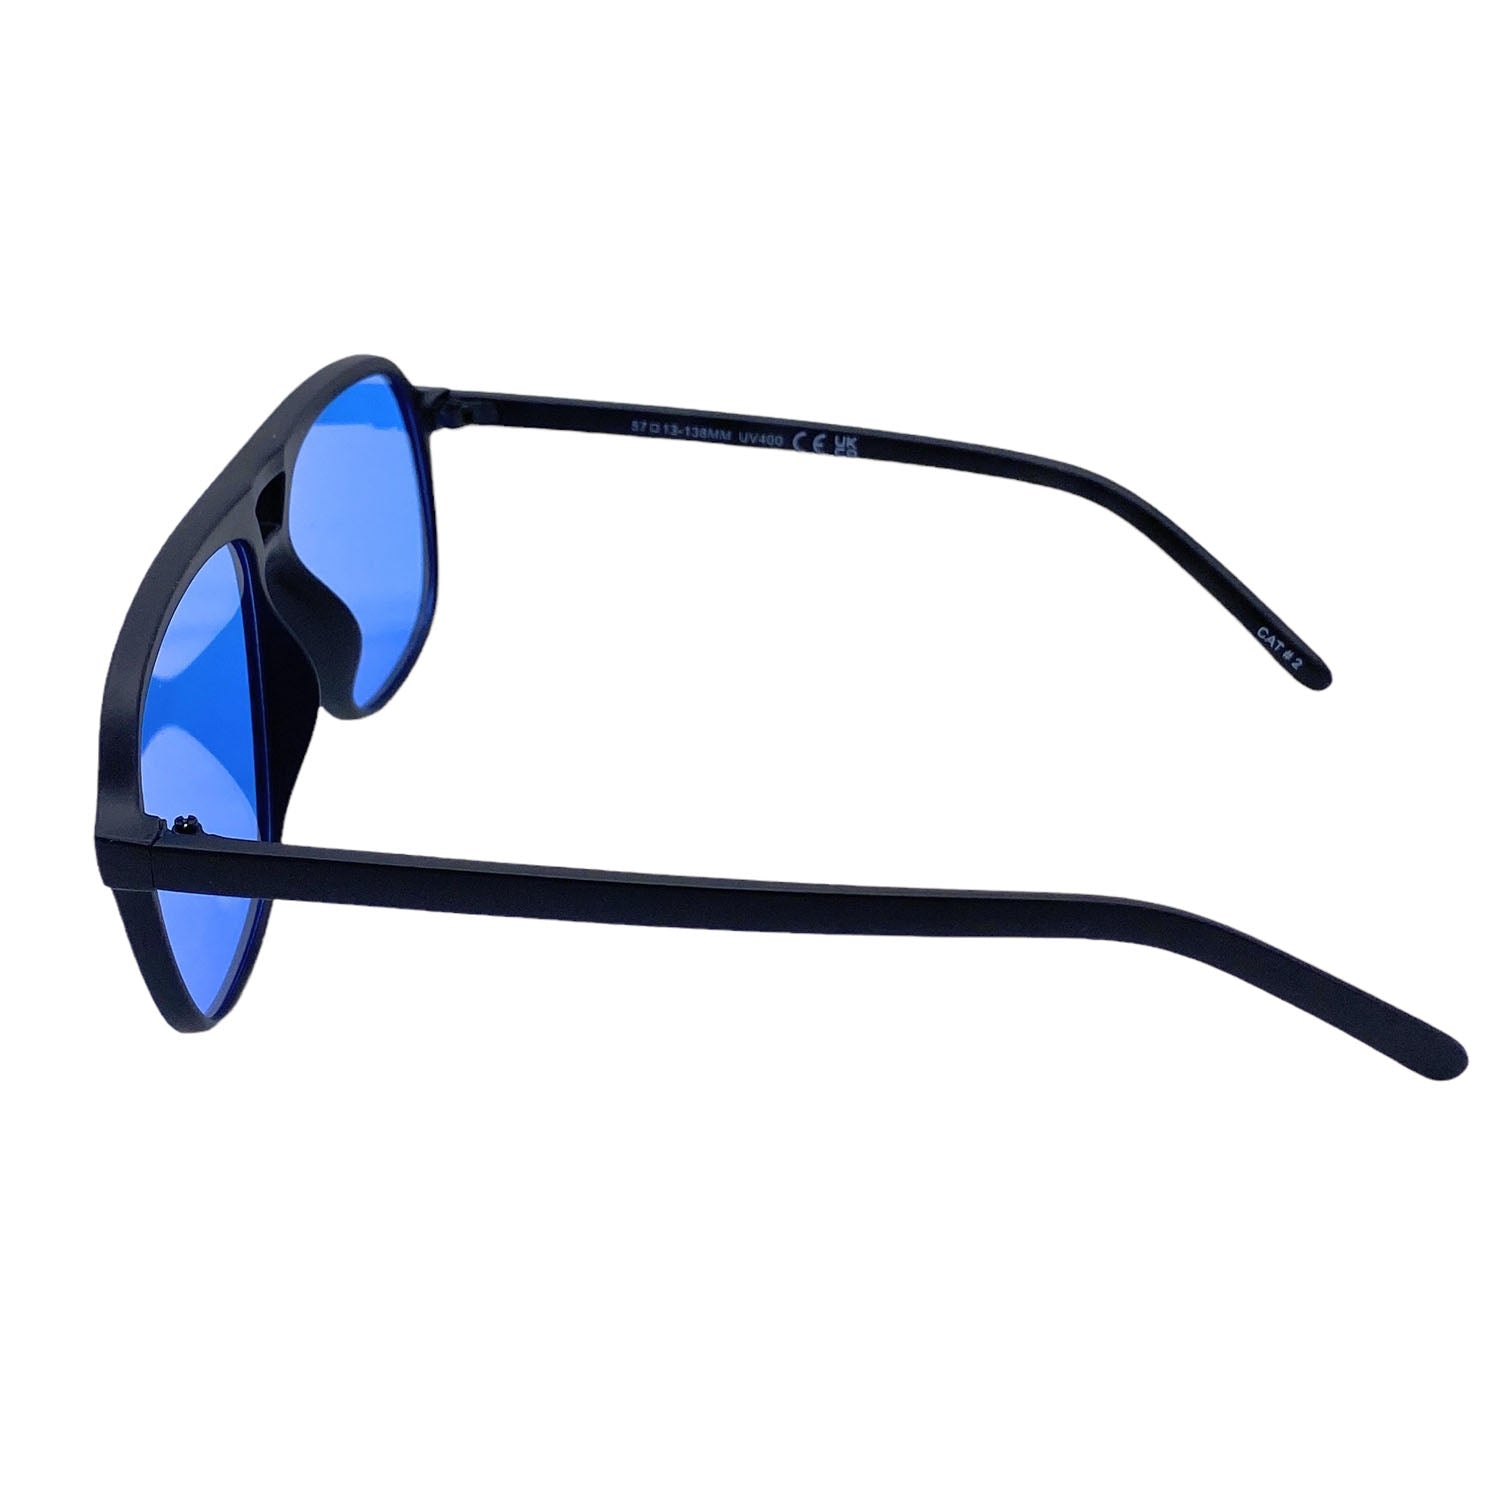 Empire Cove Oversized Aviator Sunglasses Retro Double Bridge Driving UV Protection